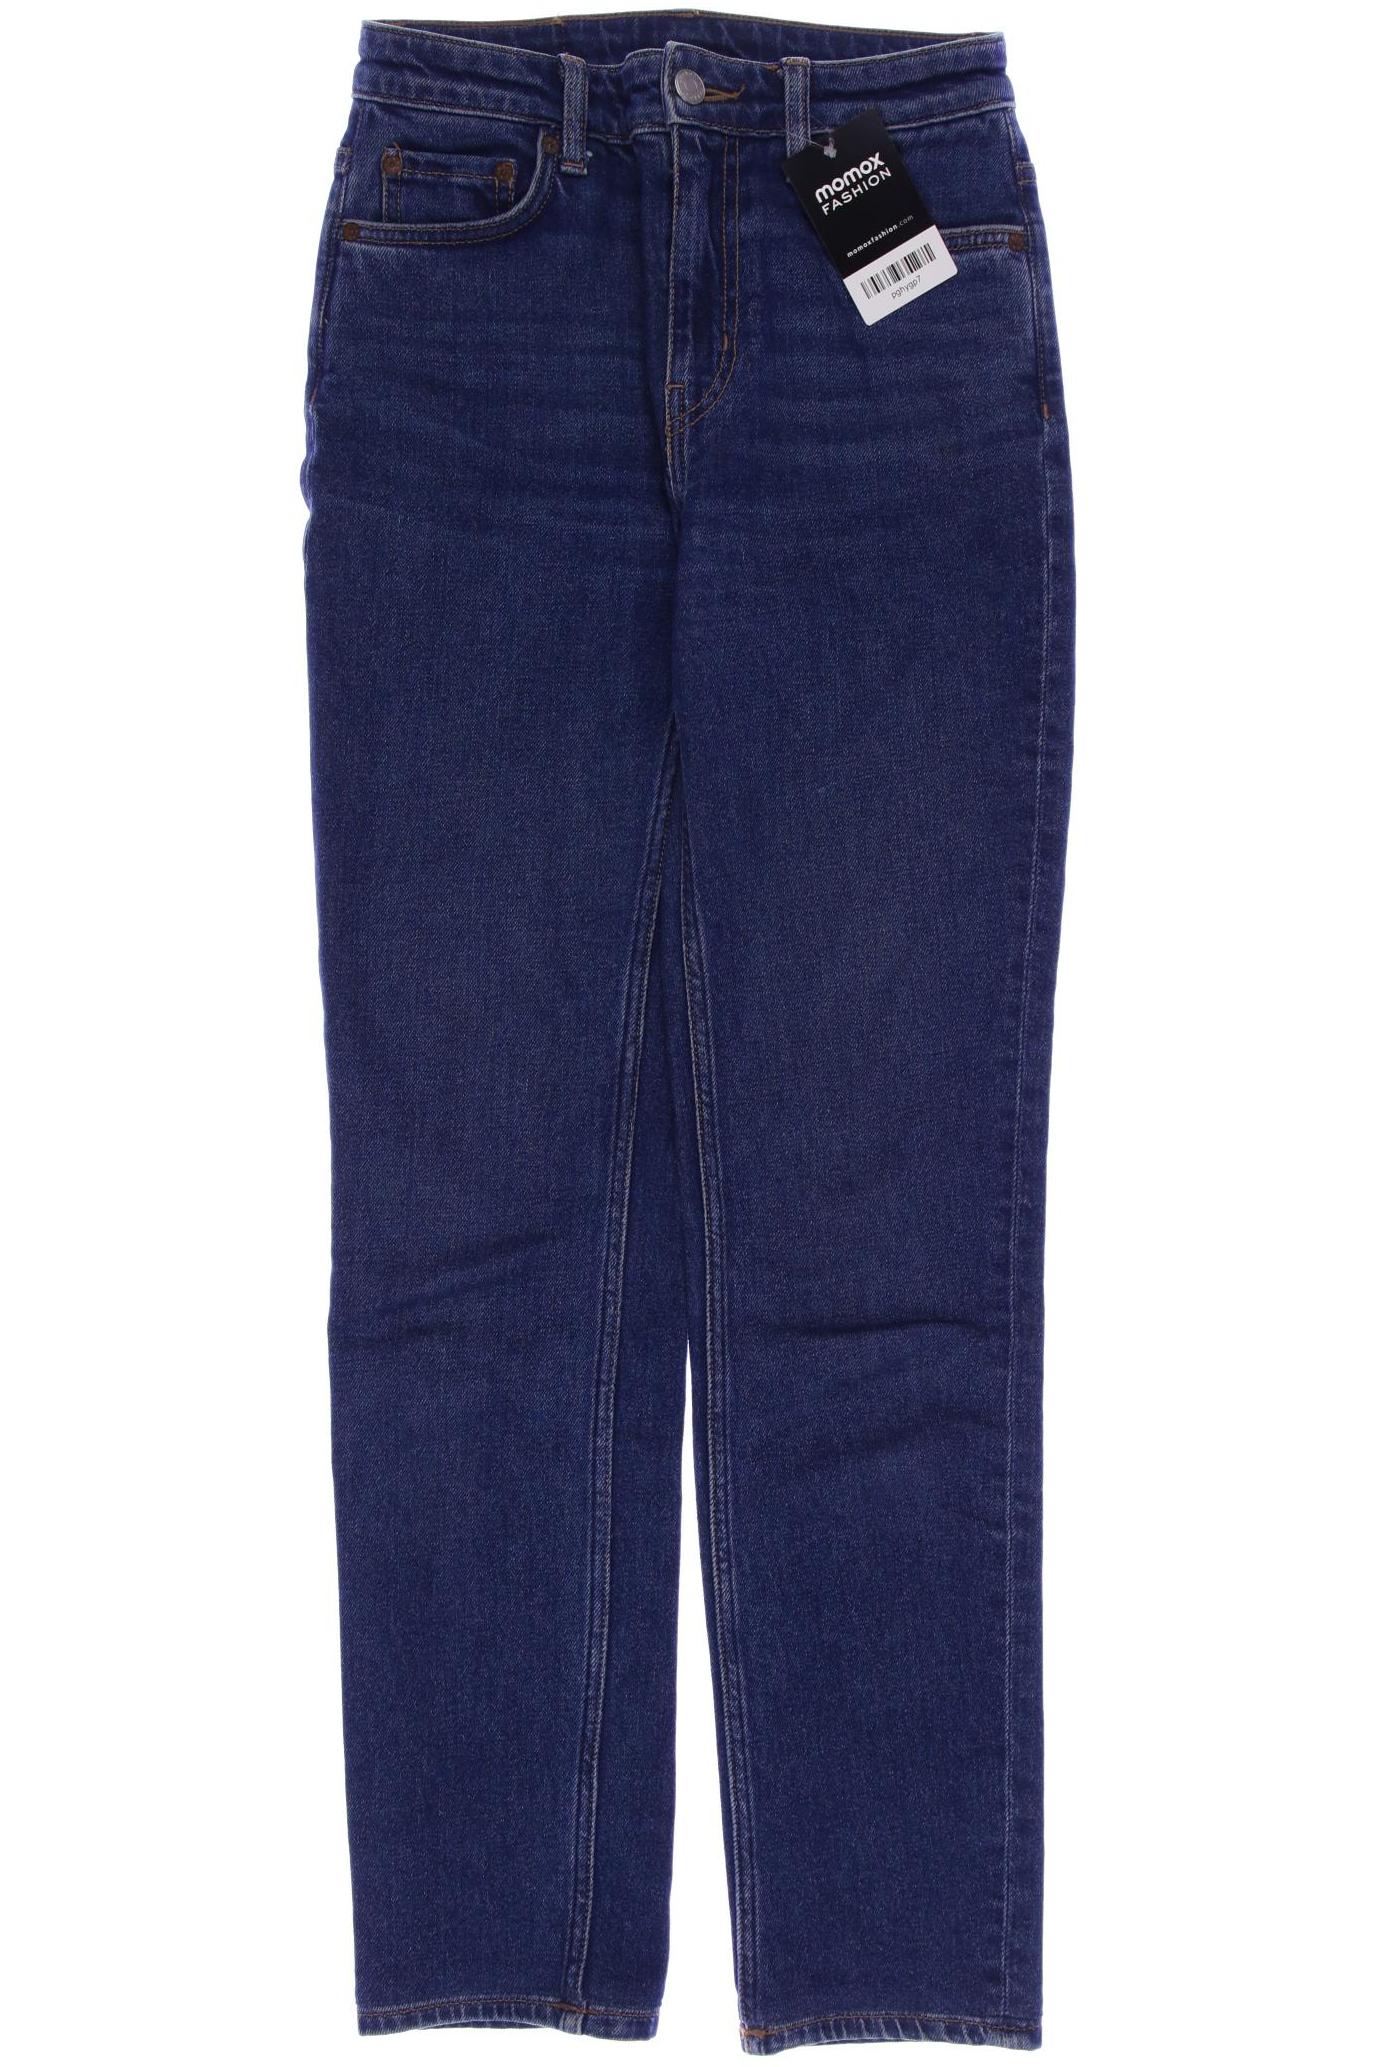 Weekday Damen Jeans, marineblau von Weekday